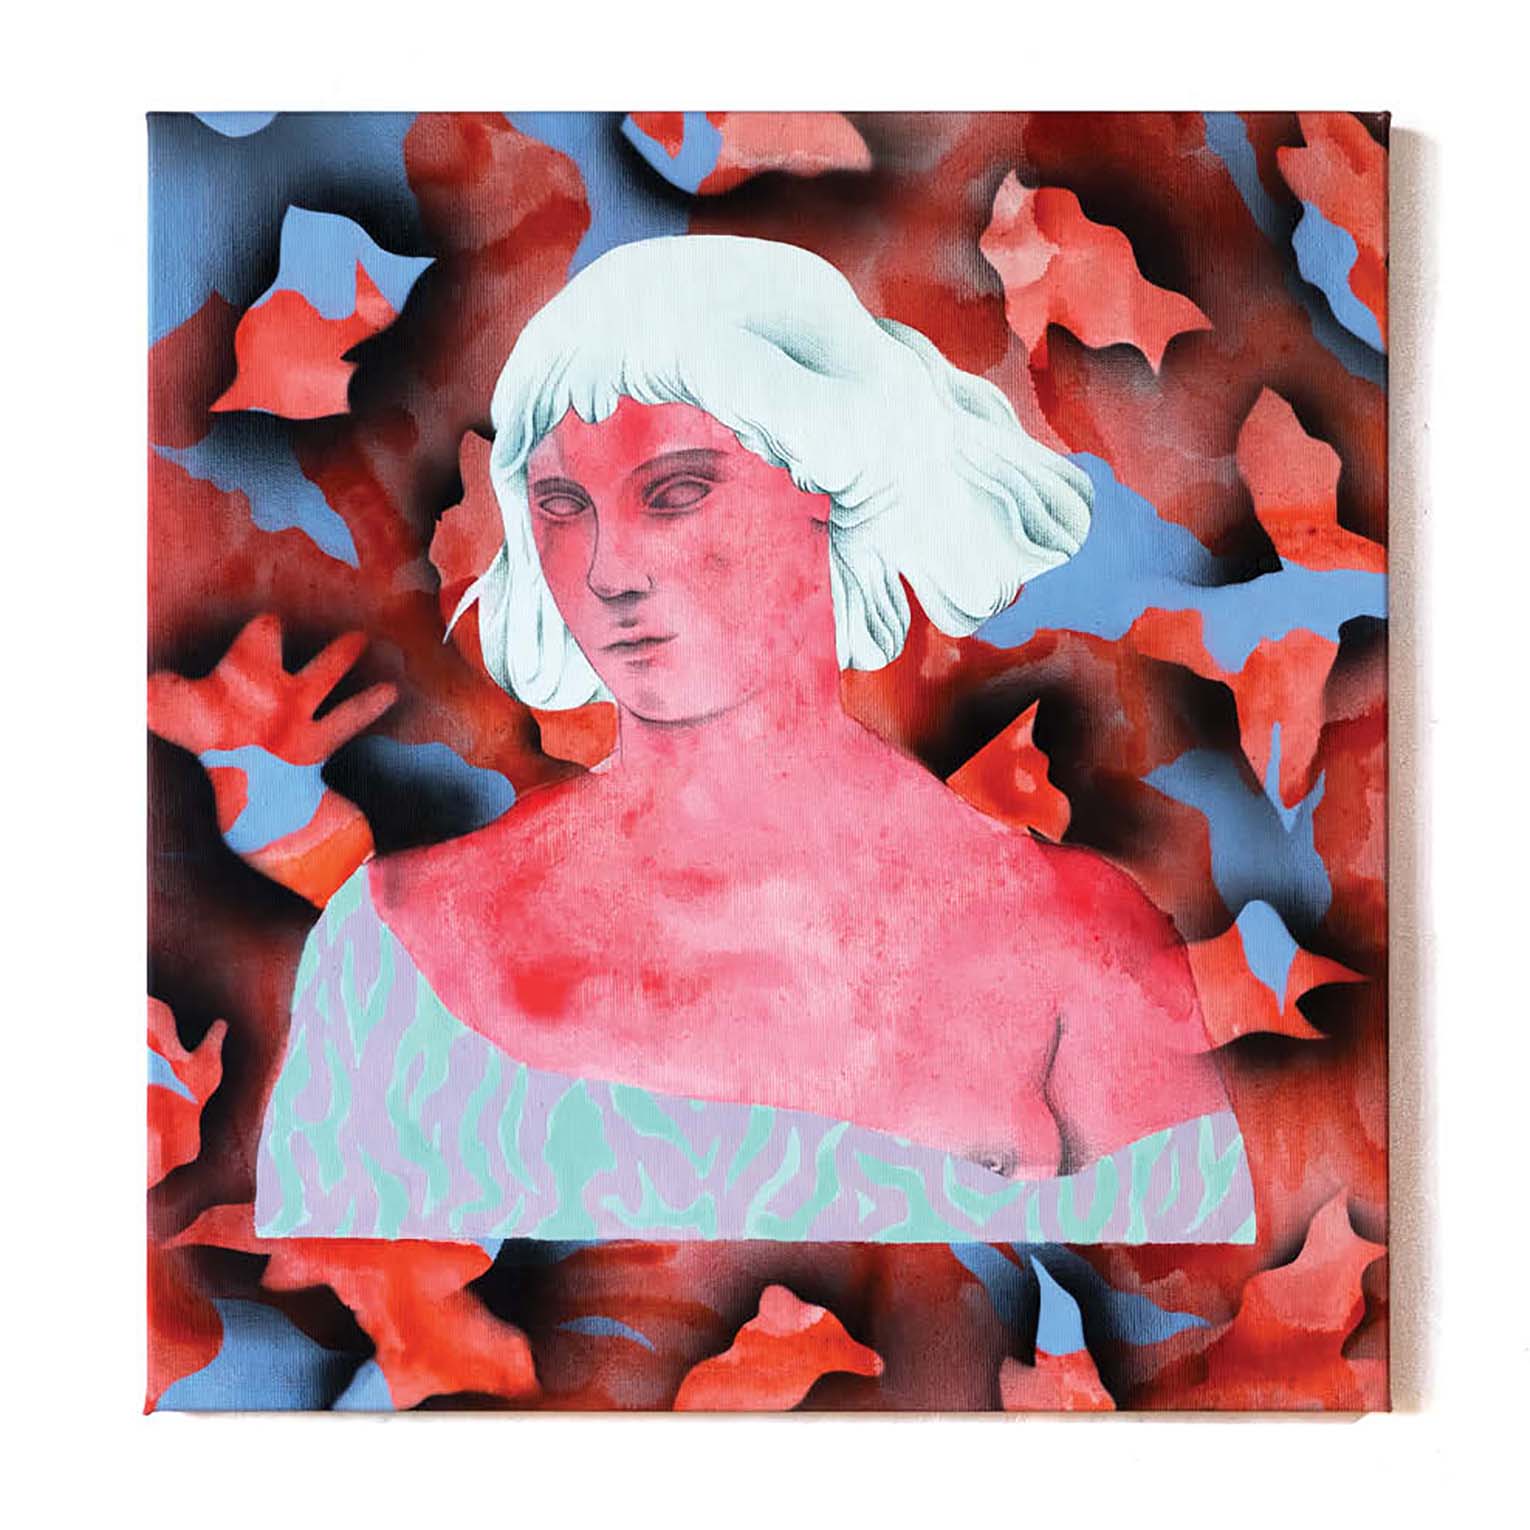 Dreamer in red - Peinture acrylique sur toile - 43x45 cm - 2019